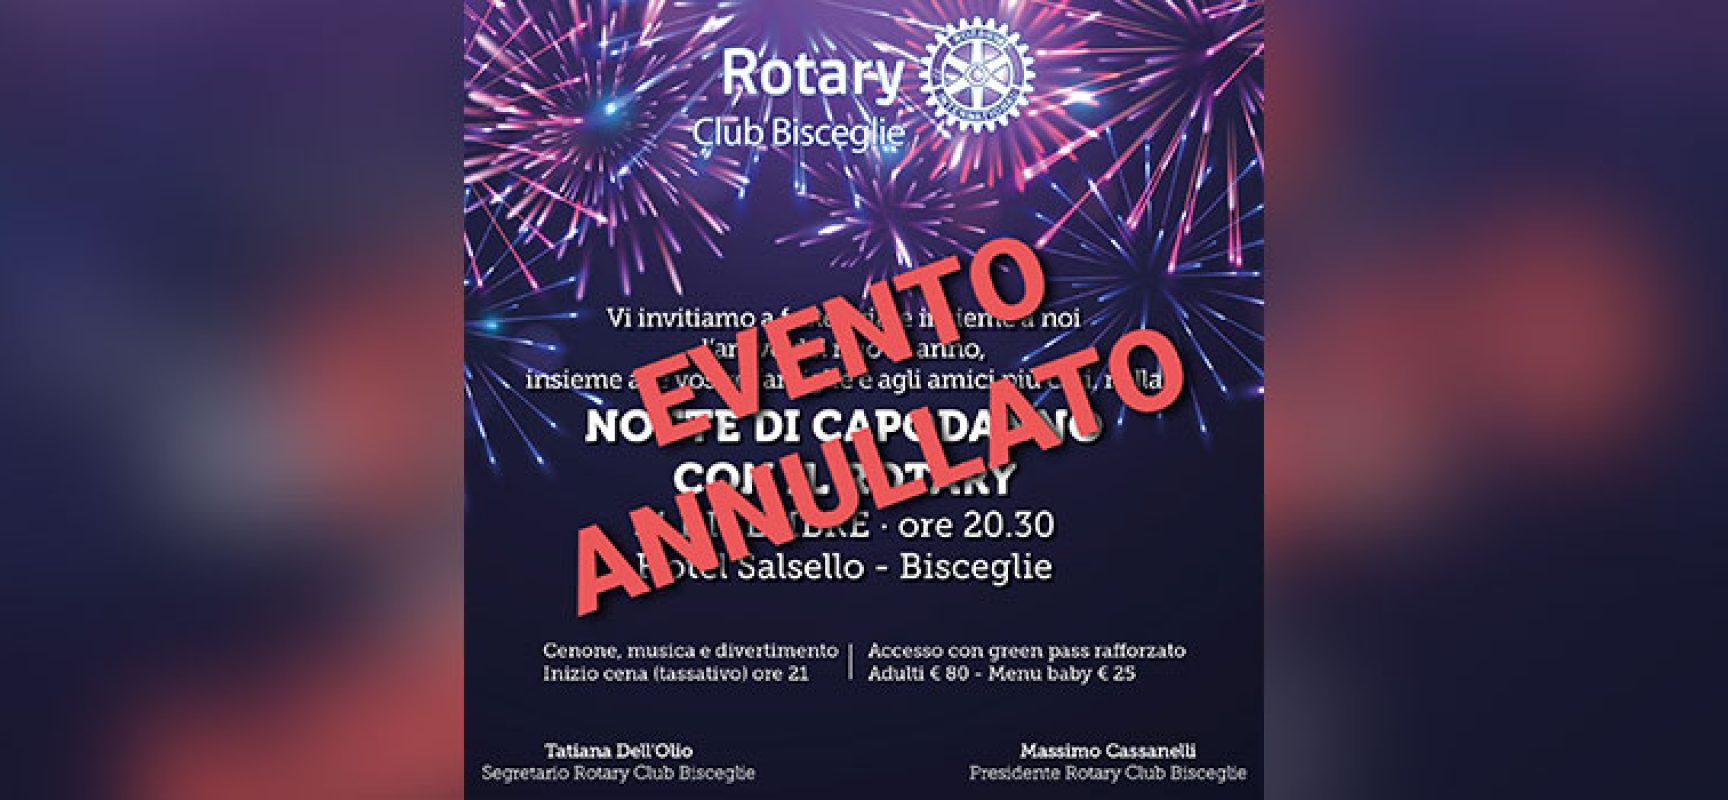 Rotary Club di Bisceglie, annullata festa di Capodanno